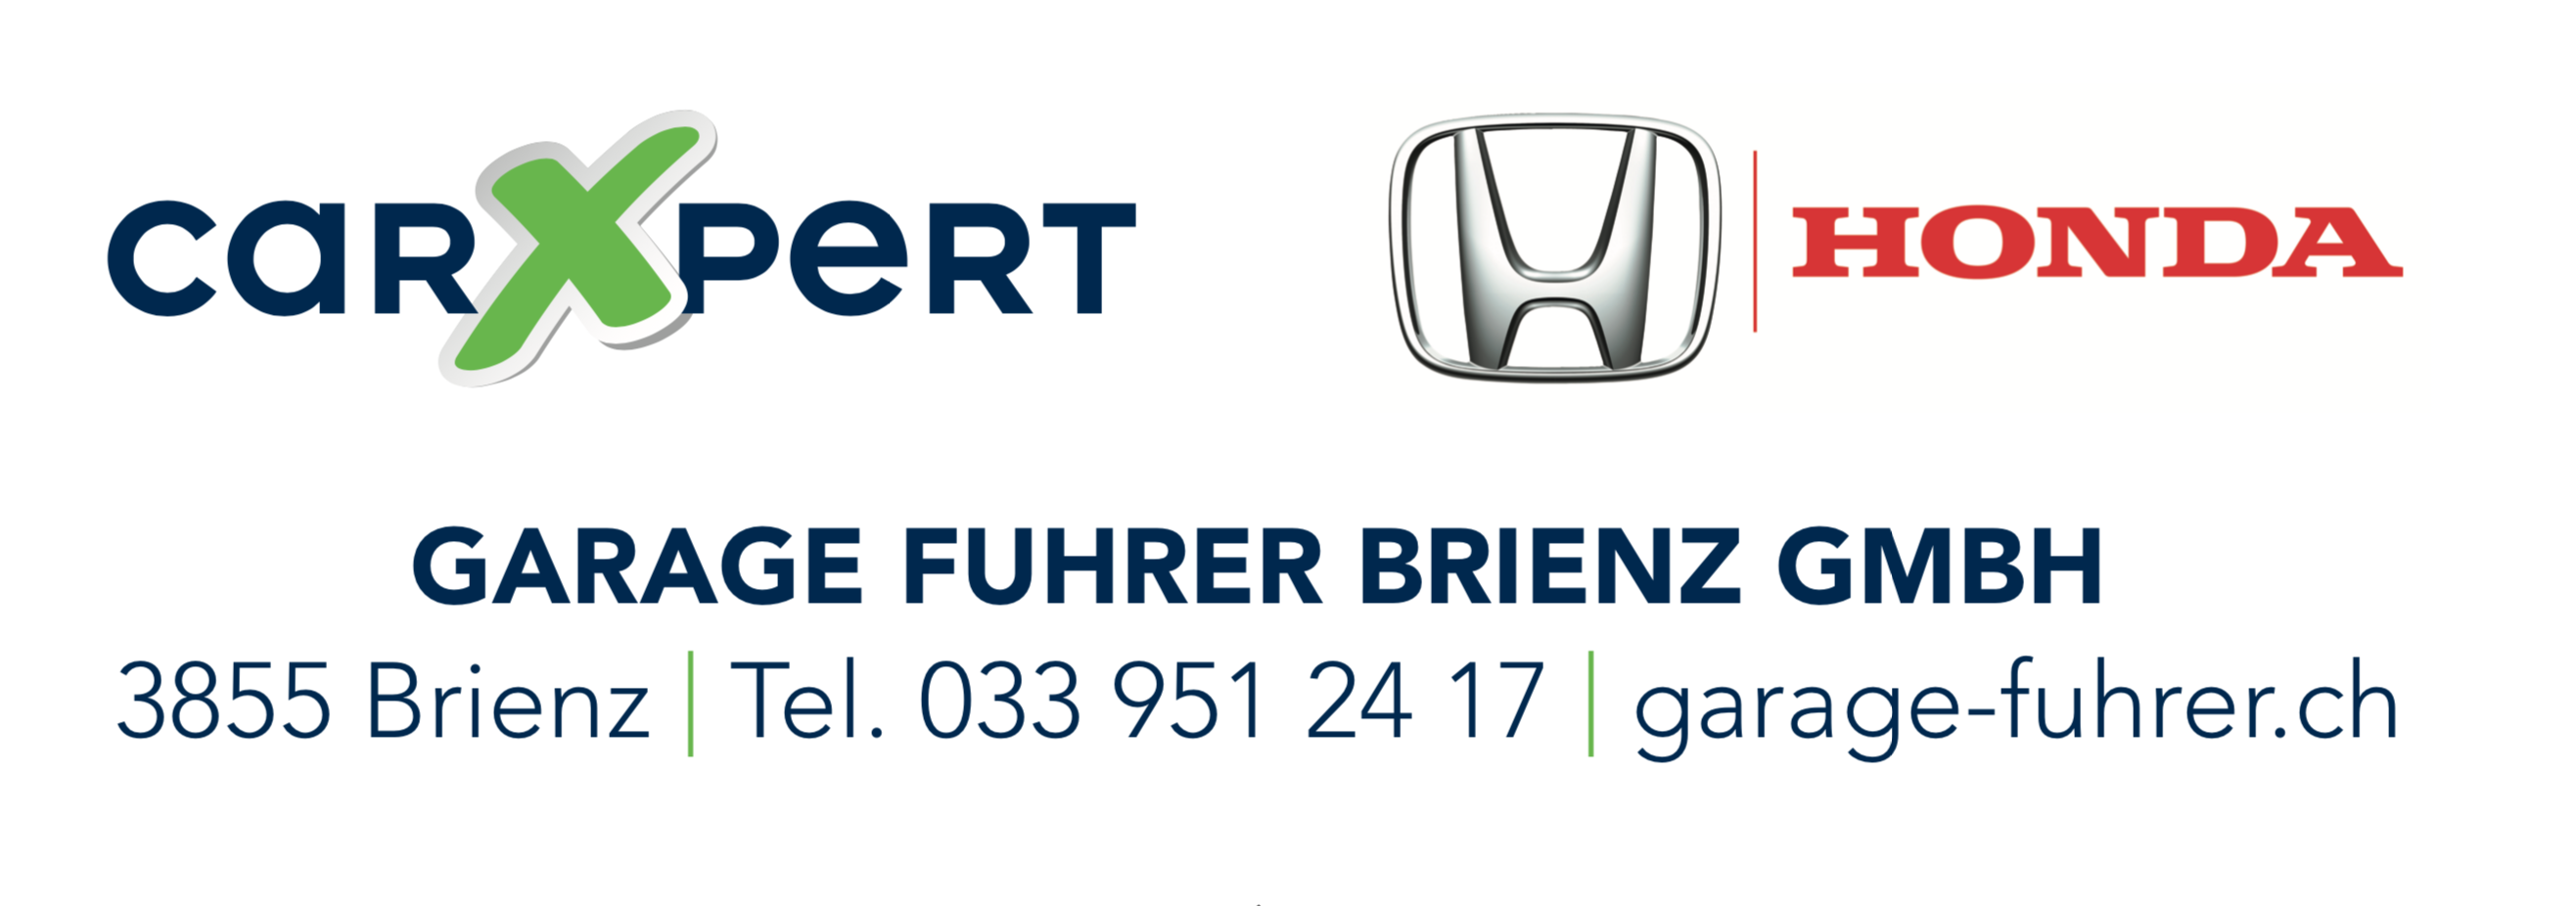 Garage Fuhrer Brienz GmbH